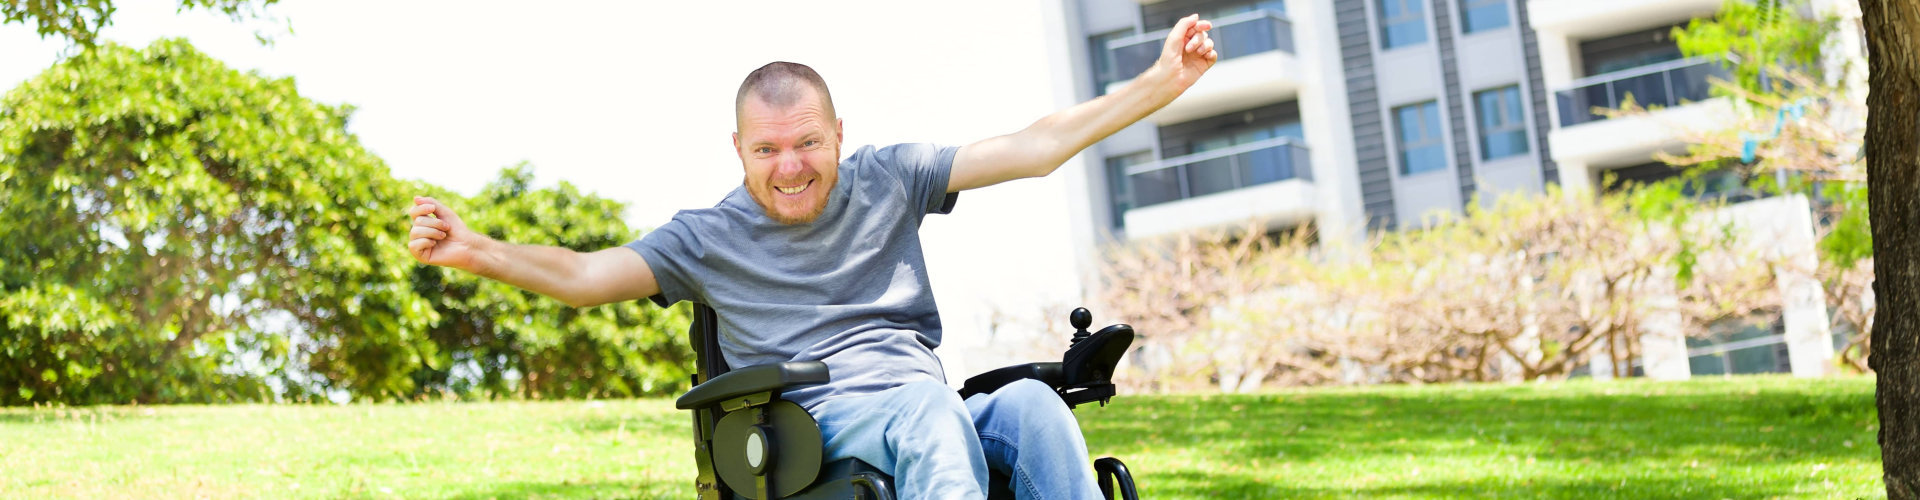 Disabled man in a wheelchair enjoying fresh air at the park